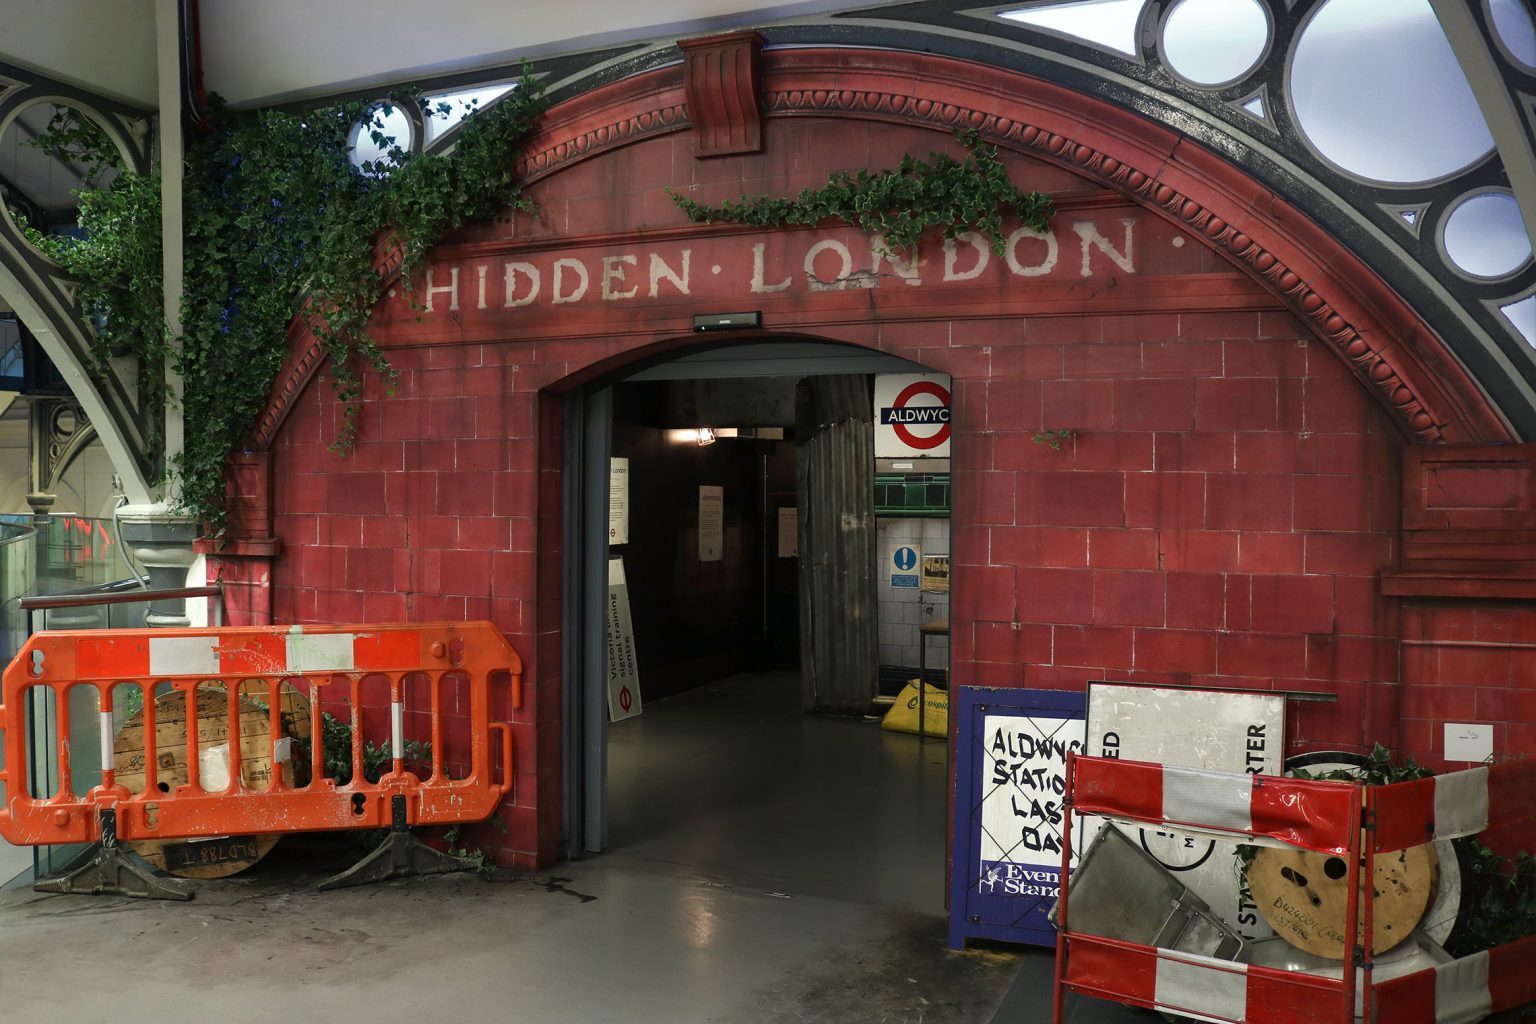 hidden london tours transport museum